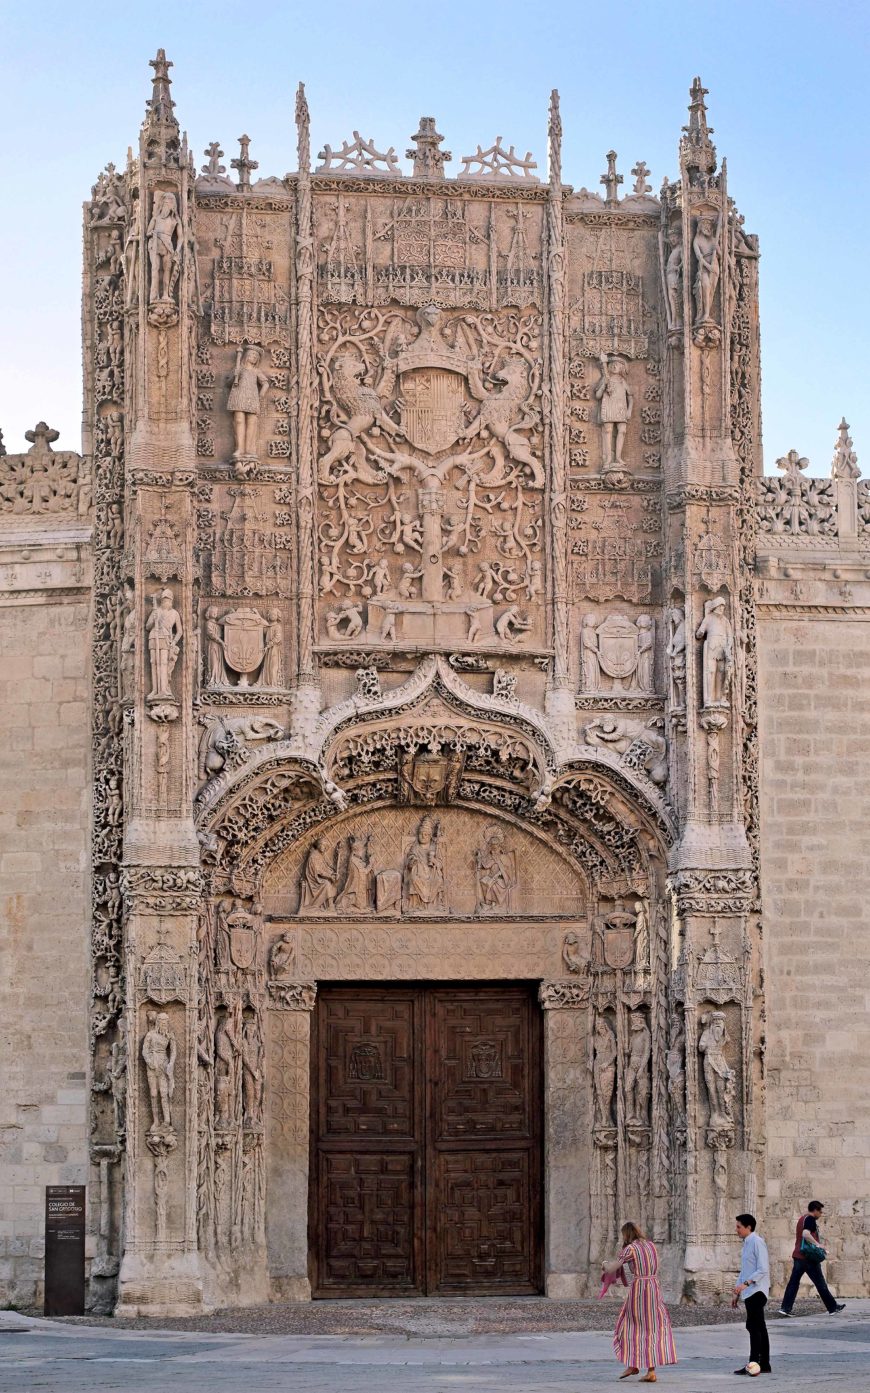 Façade of San Gregorio, Valladolid, Spain (photo: Luis Fernández García, CC BY-SA 4.0)